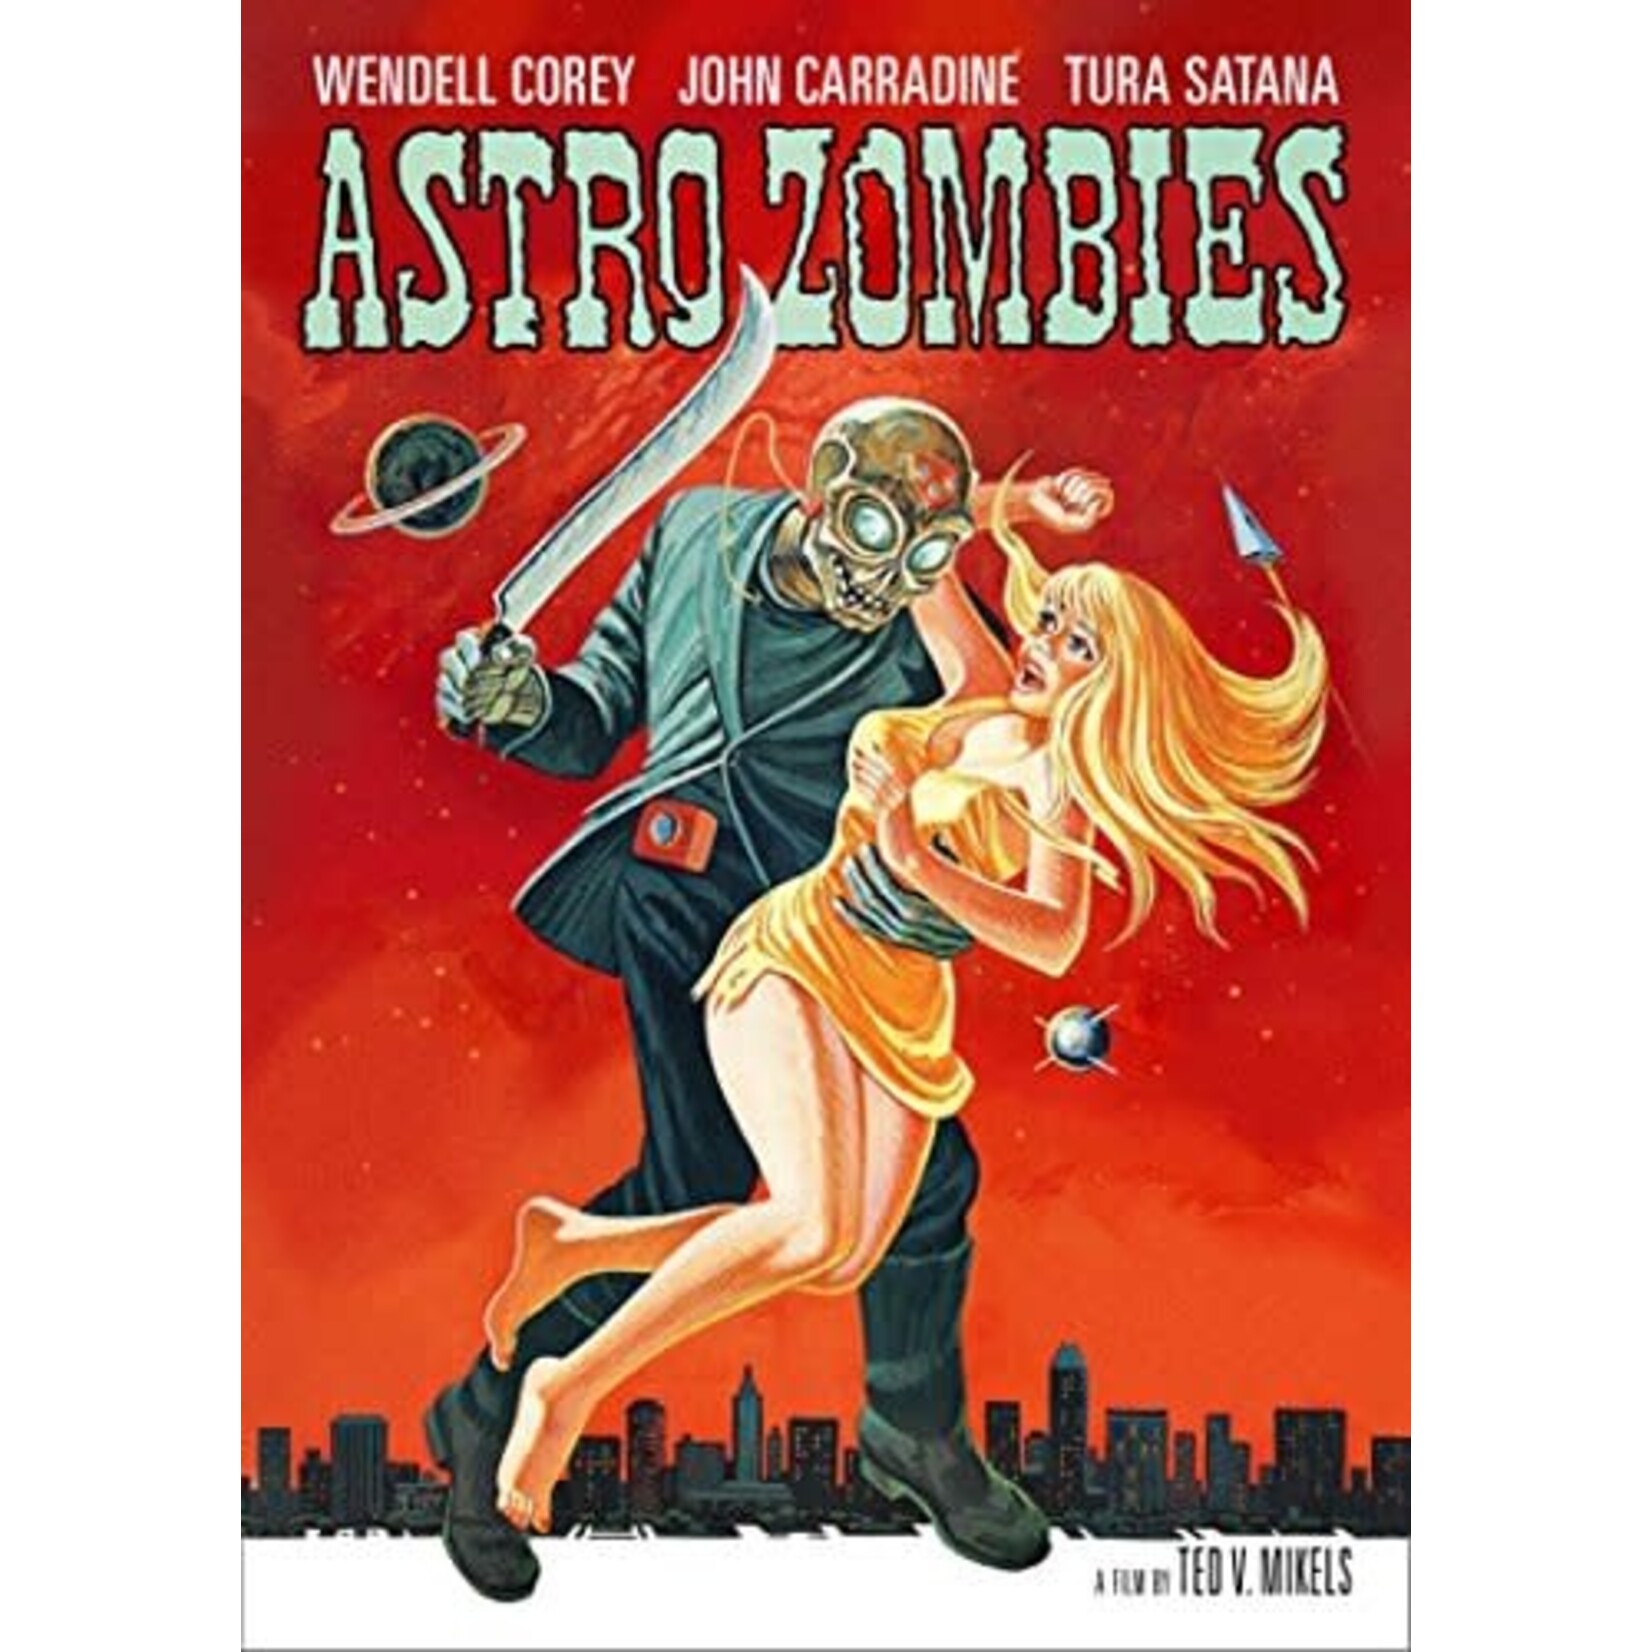 Astro Zombies (1968) [DVD]